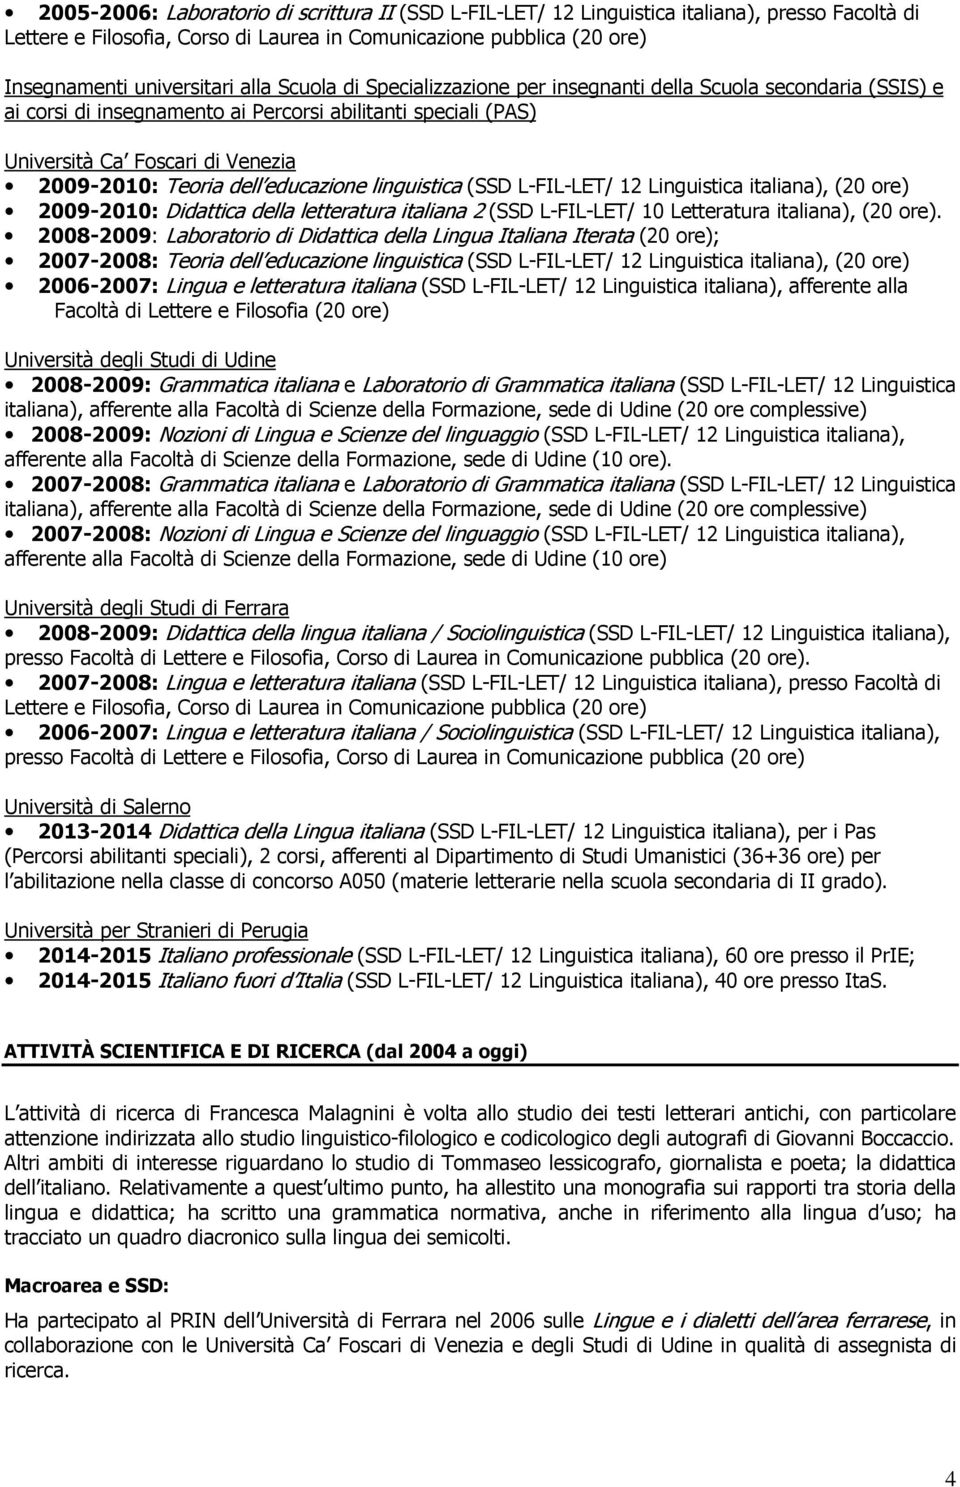 ore) 2009-2010: Didattica della letteratura italiana 2 (SSD L-FIL-LET/ 10 Letteratura italiana), (20 ore).